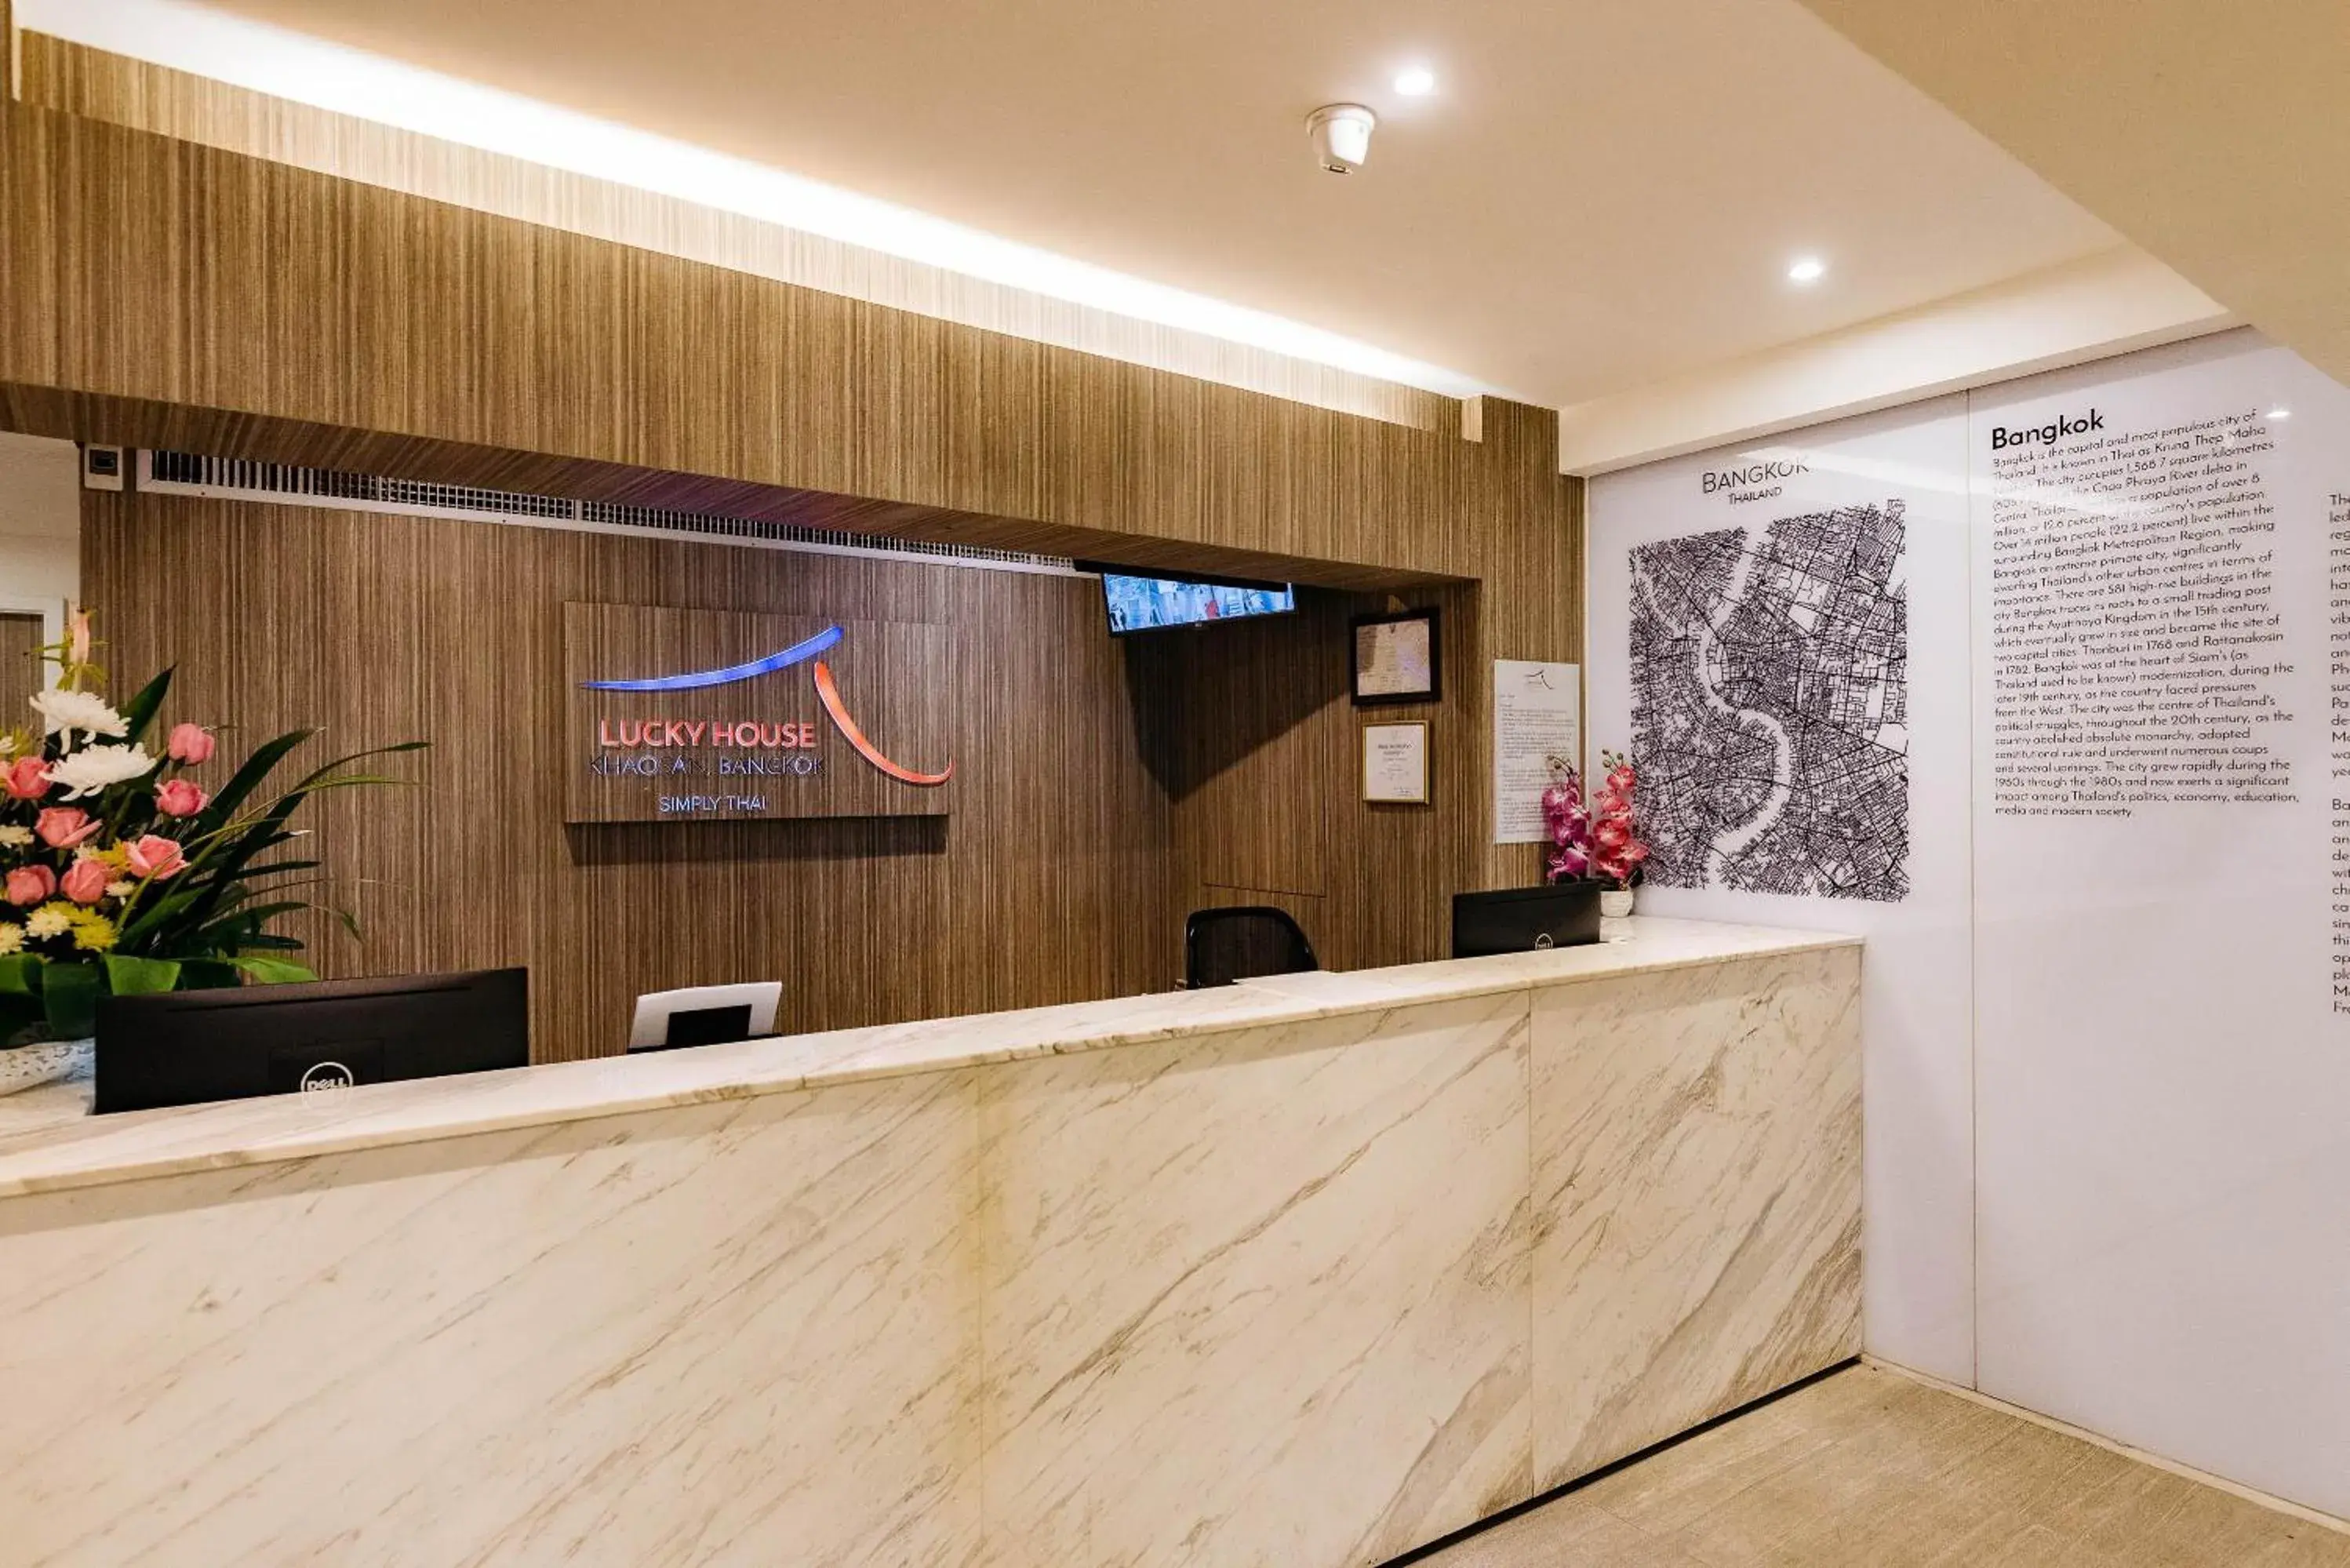 Lobby or reception, Lobby/Reception in Lucky House Khaosan